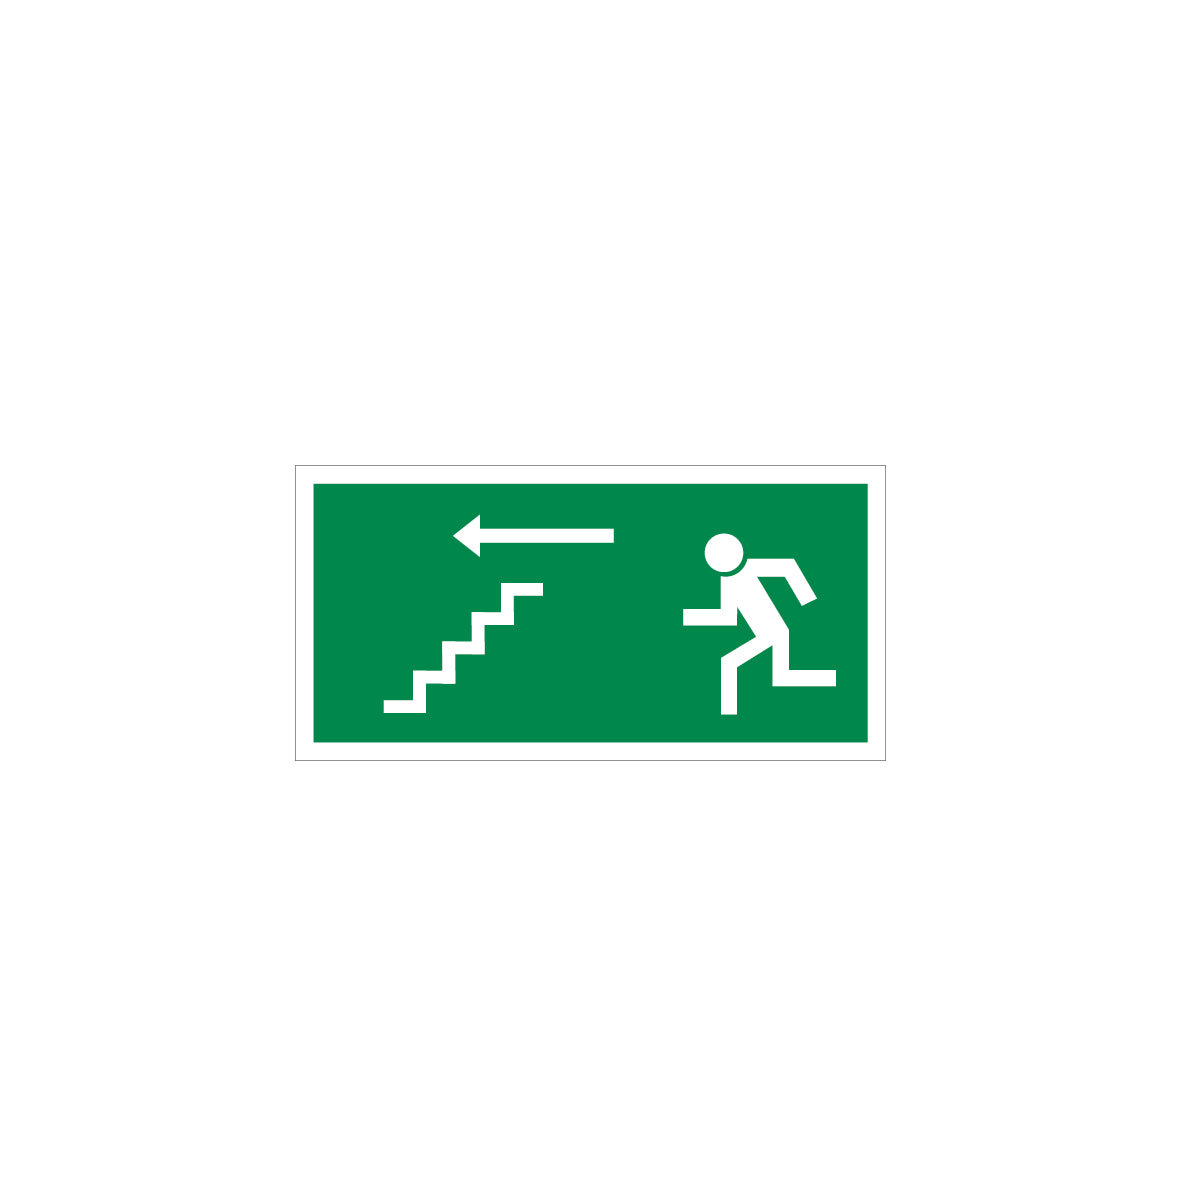 6.R-922 Notausgang Treppe, Rettungszeichen, praxisbewährt